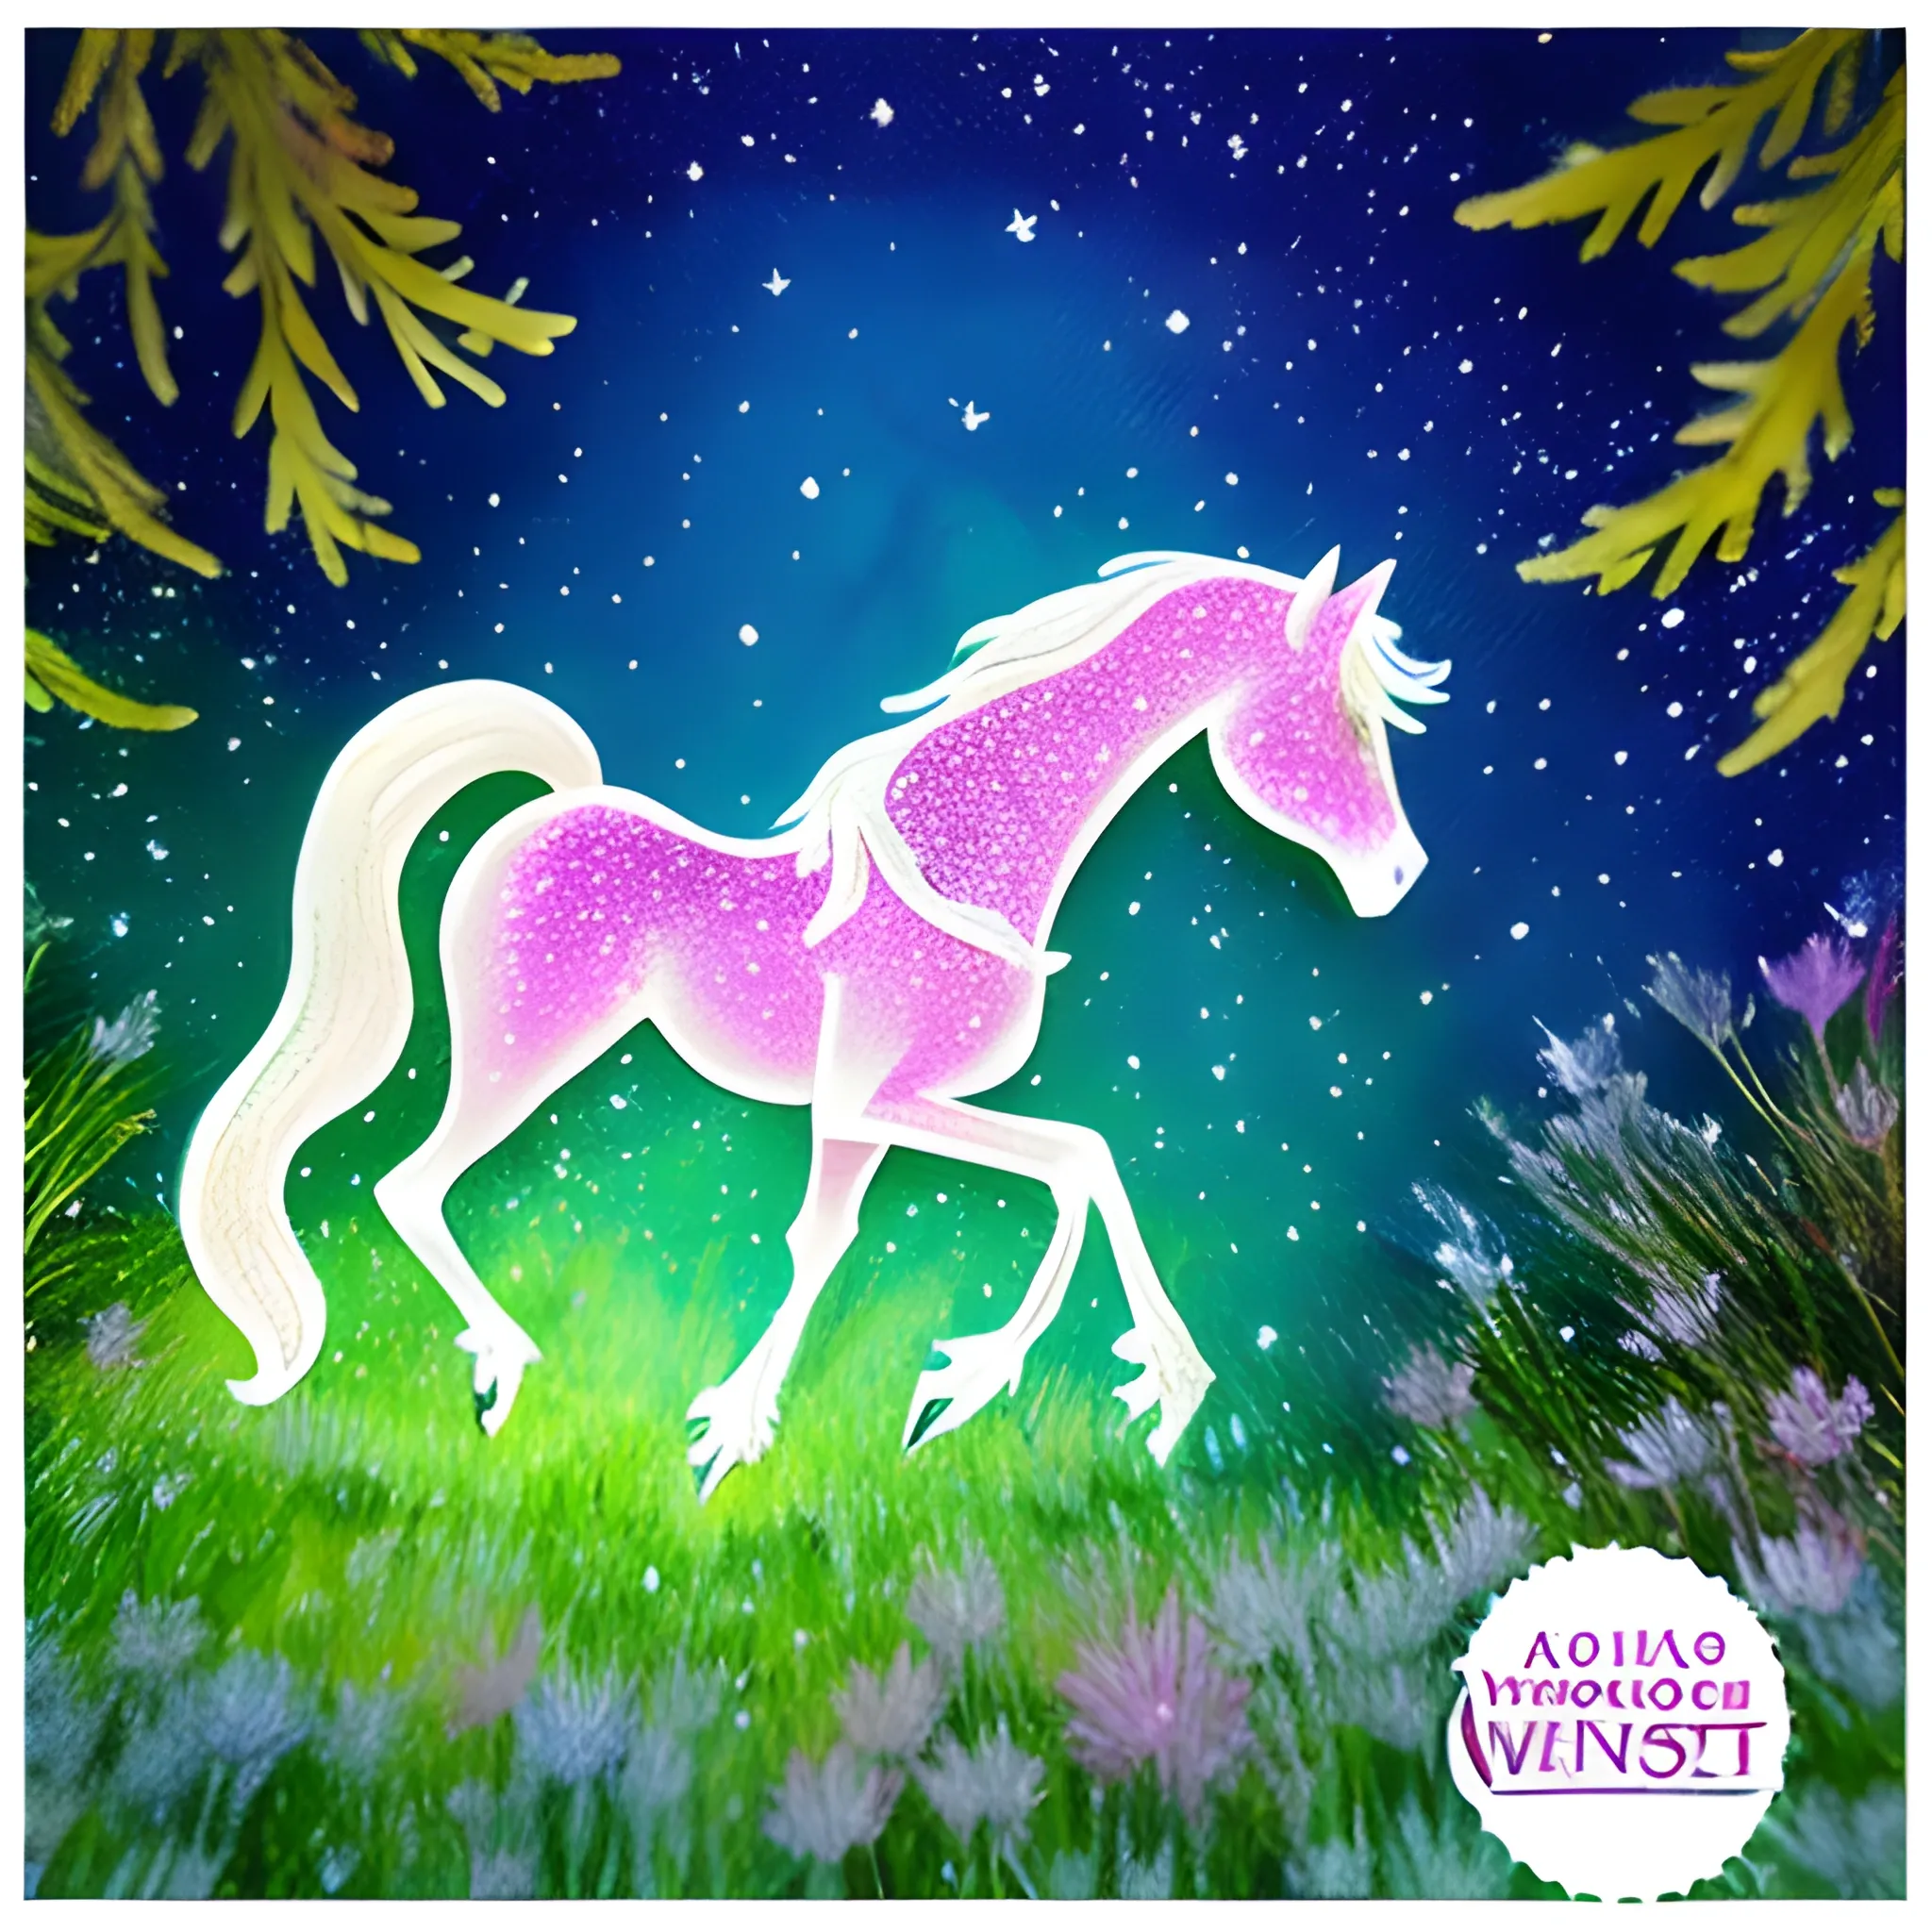 Ein magischer Moment mit My Little Pony in einem verzauberten Wald voller glitzernder Lichter und mystischer Kreaturen, Ponys beim Spielen und Entdecken neuer Freundschaften, eine Atmosphäre voller Wunder und Magie, Kunstwerk, Aquarell auf Papier mit leichten, pastellfarbenen Tönen, --ar 1:1 --v 5